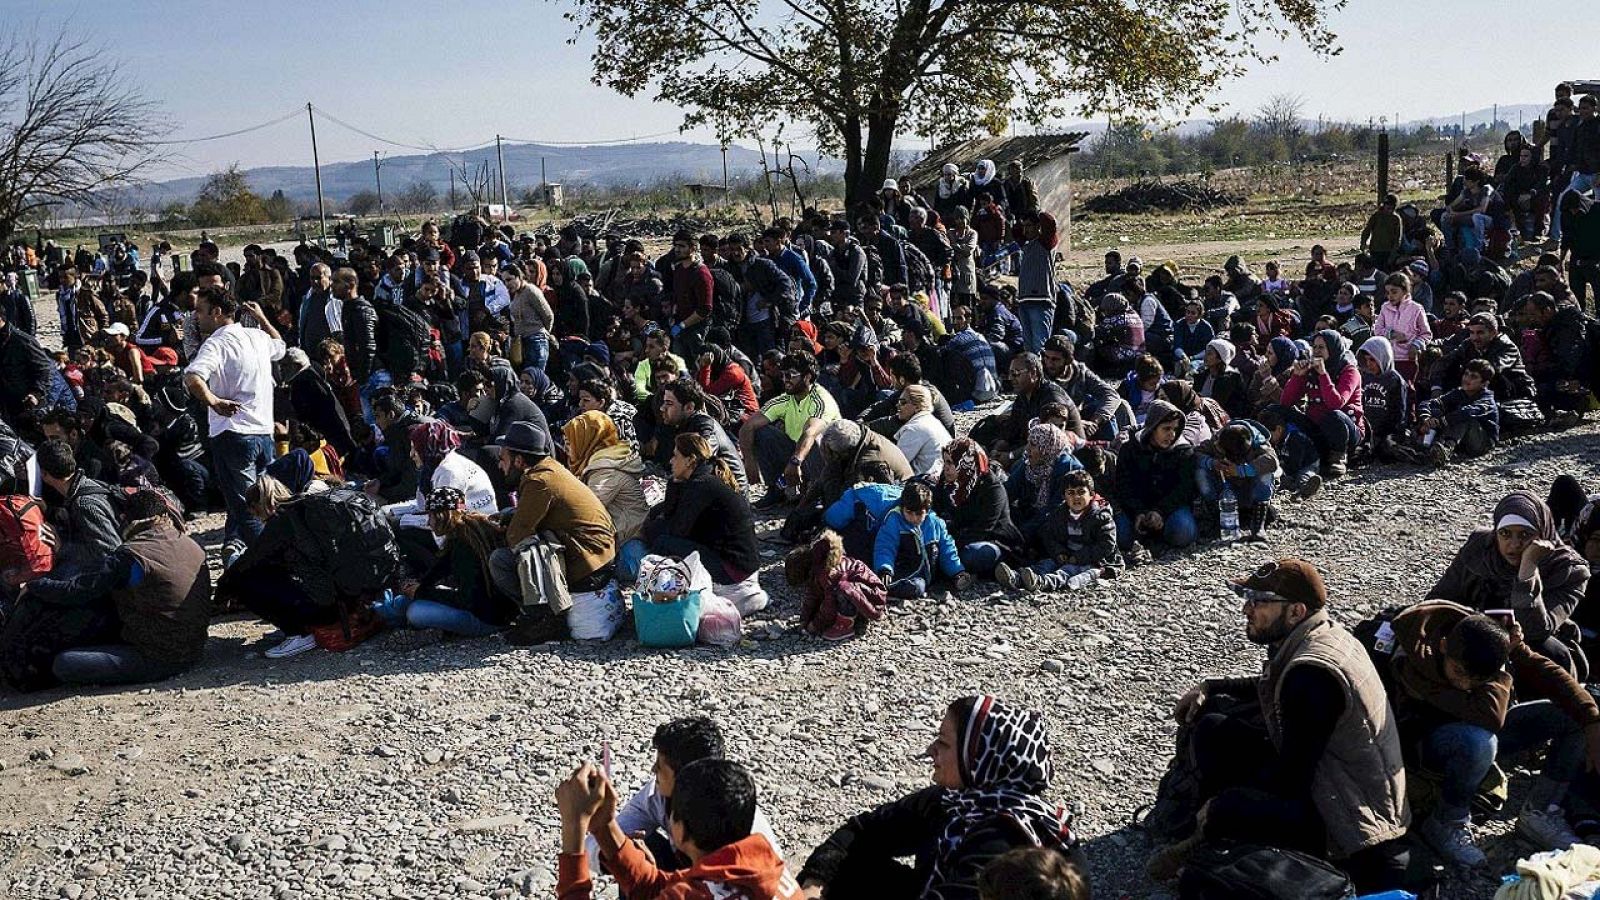 Migrantes y refugiados esperan entrar en un centro de identificación en Gevgelija, Macedonia, el 18 de noviembre de 2015. AFP PHOTO / DIMITAR DILKOFF